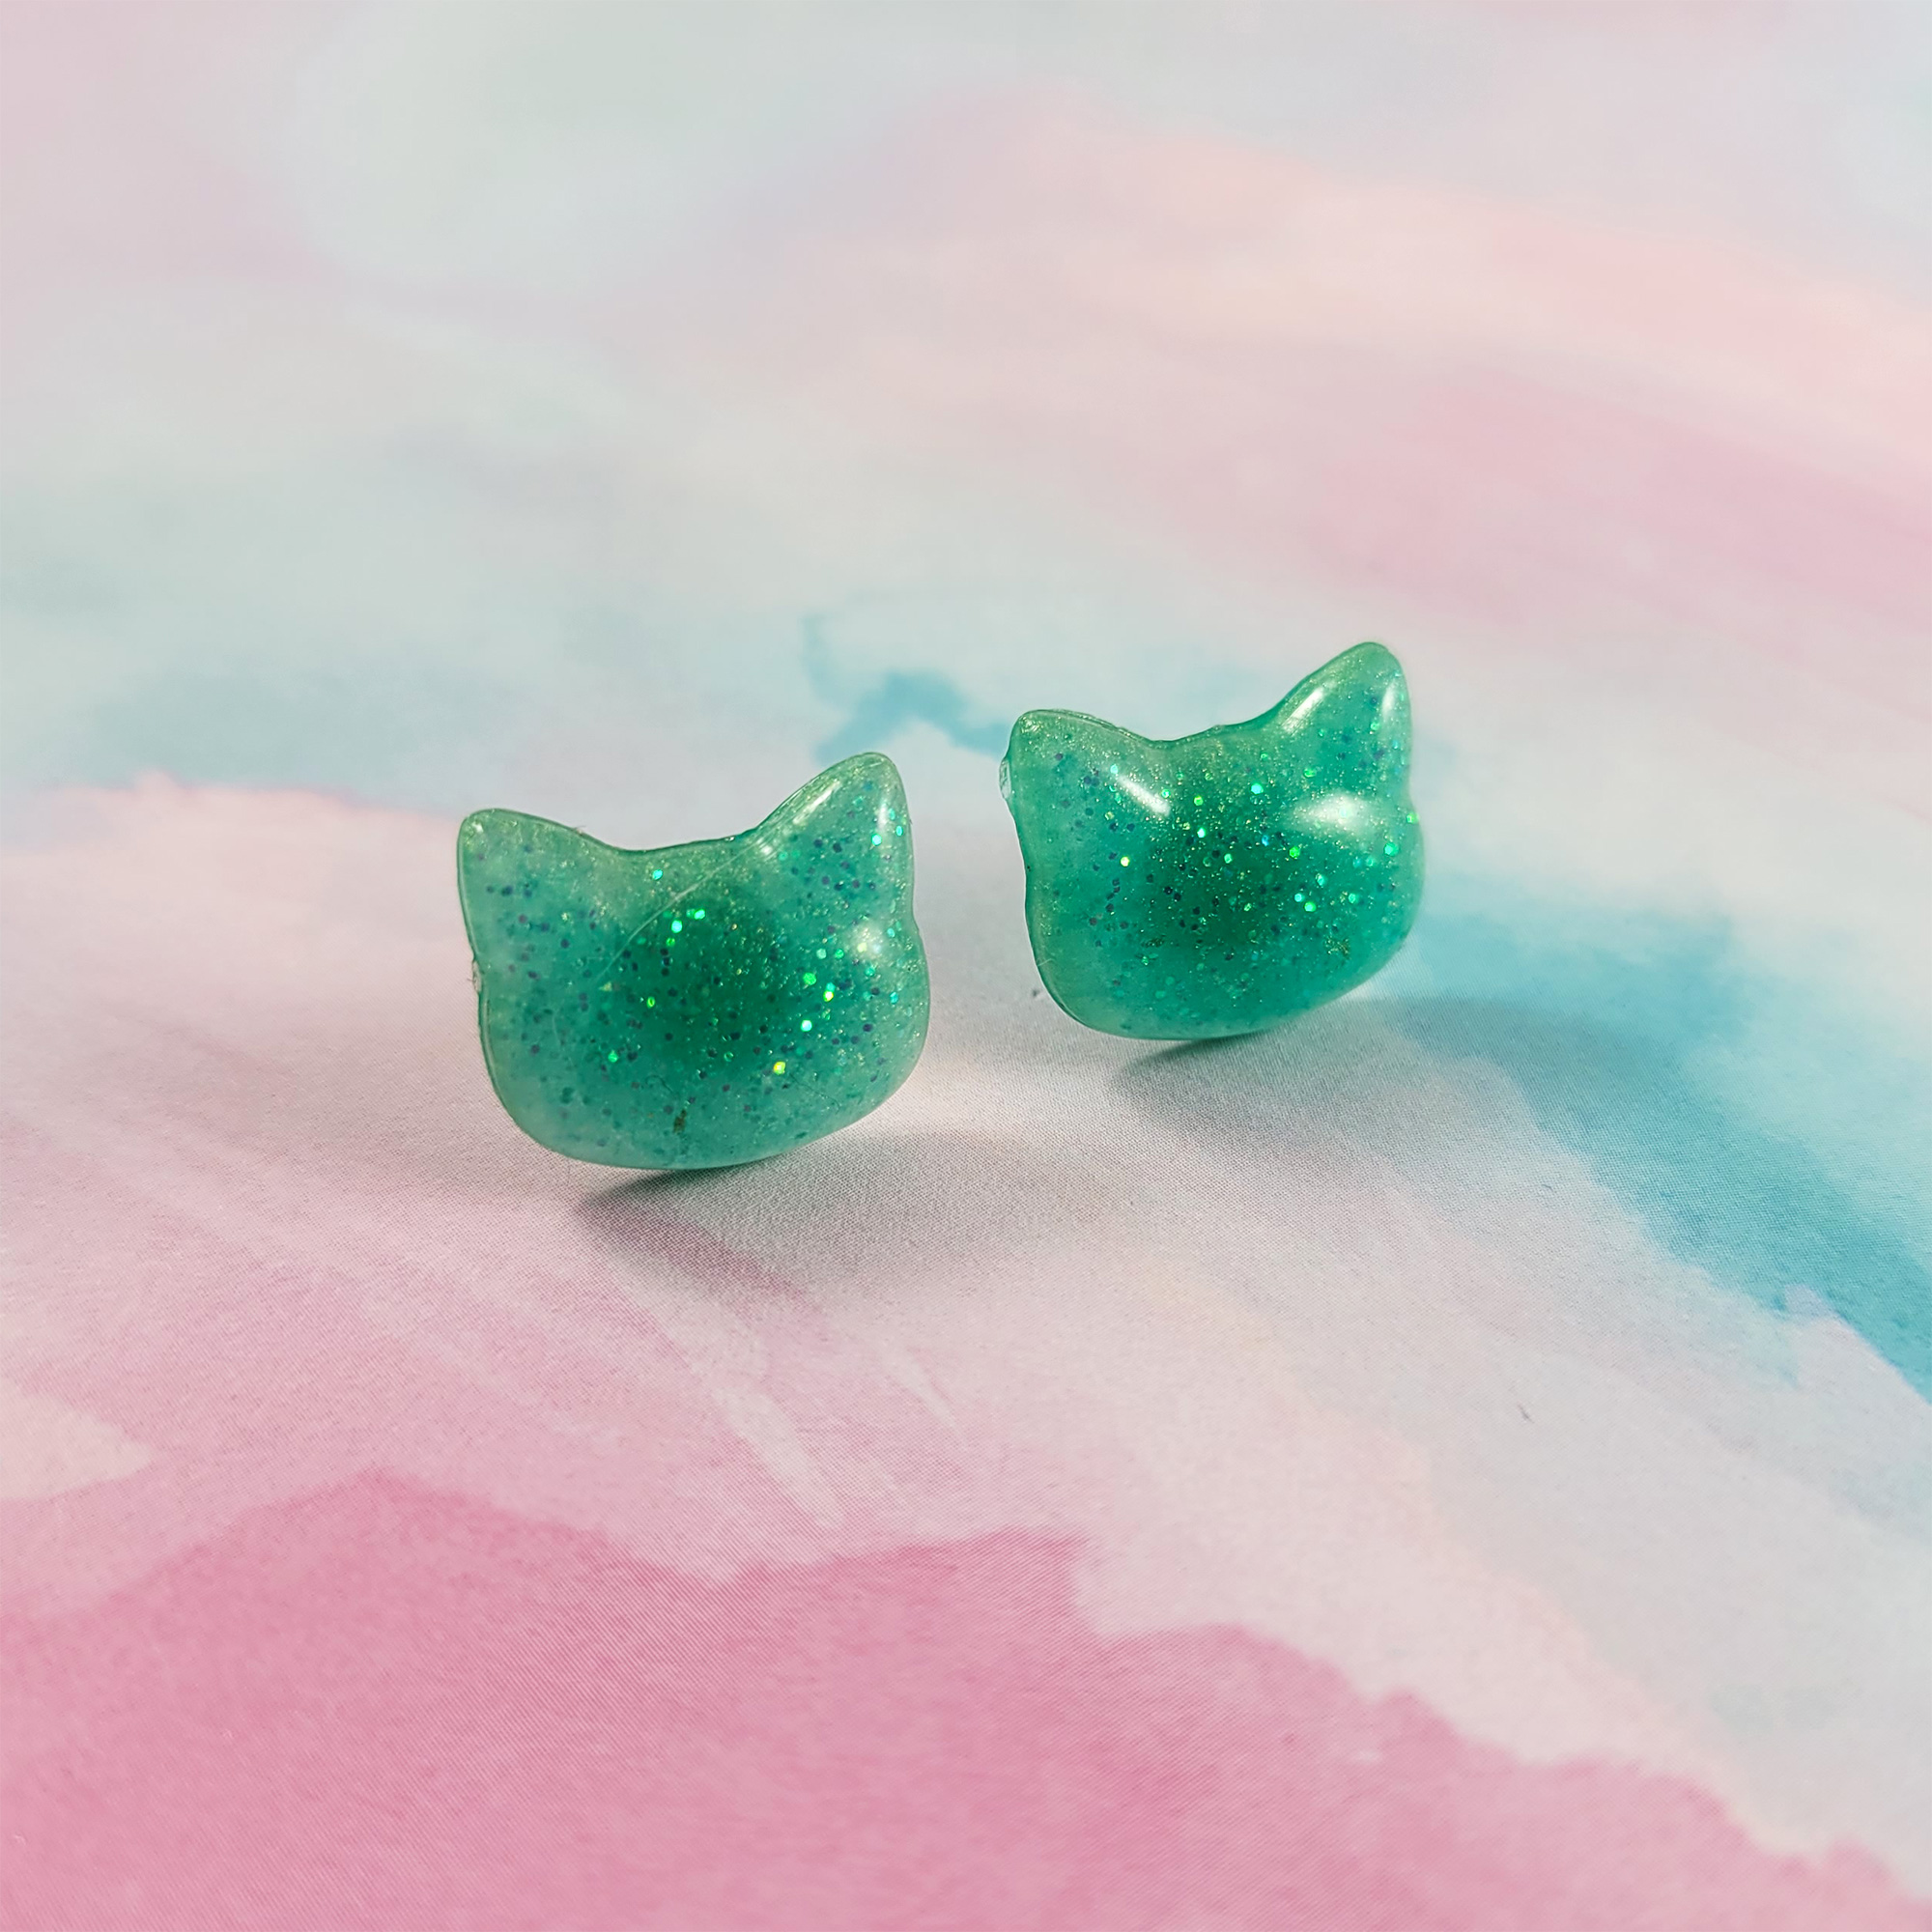 Teal Pretty Kitty Earrings by Wilde Designs